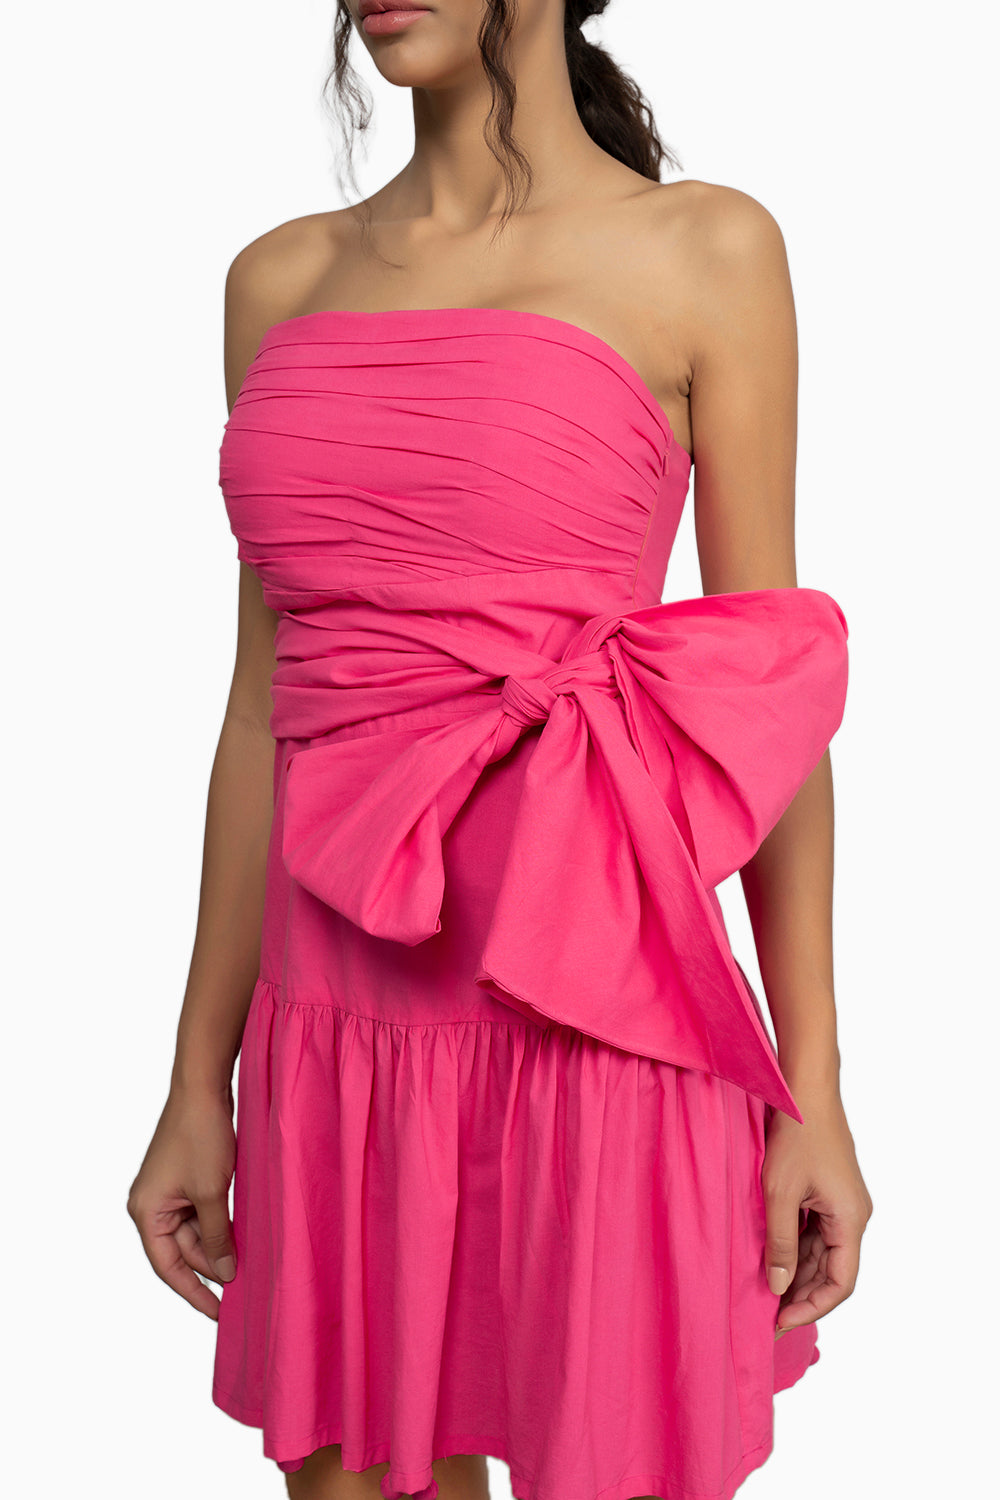 Cinque Terre Pink Dress